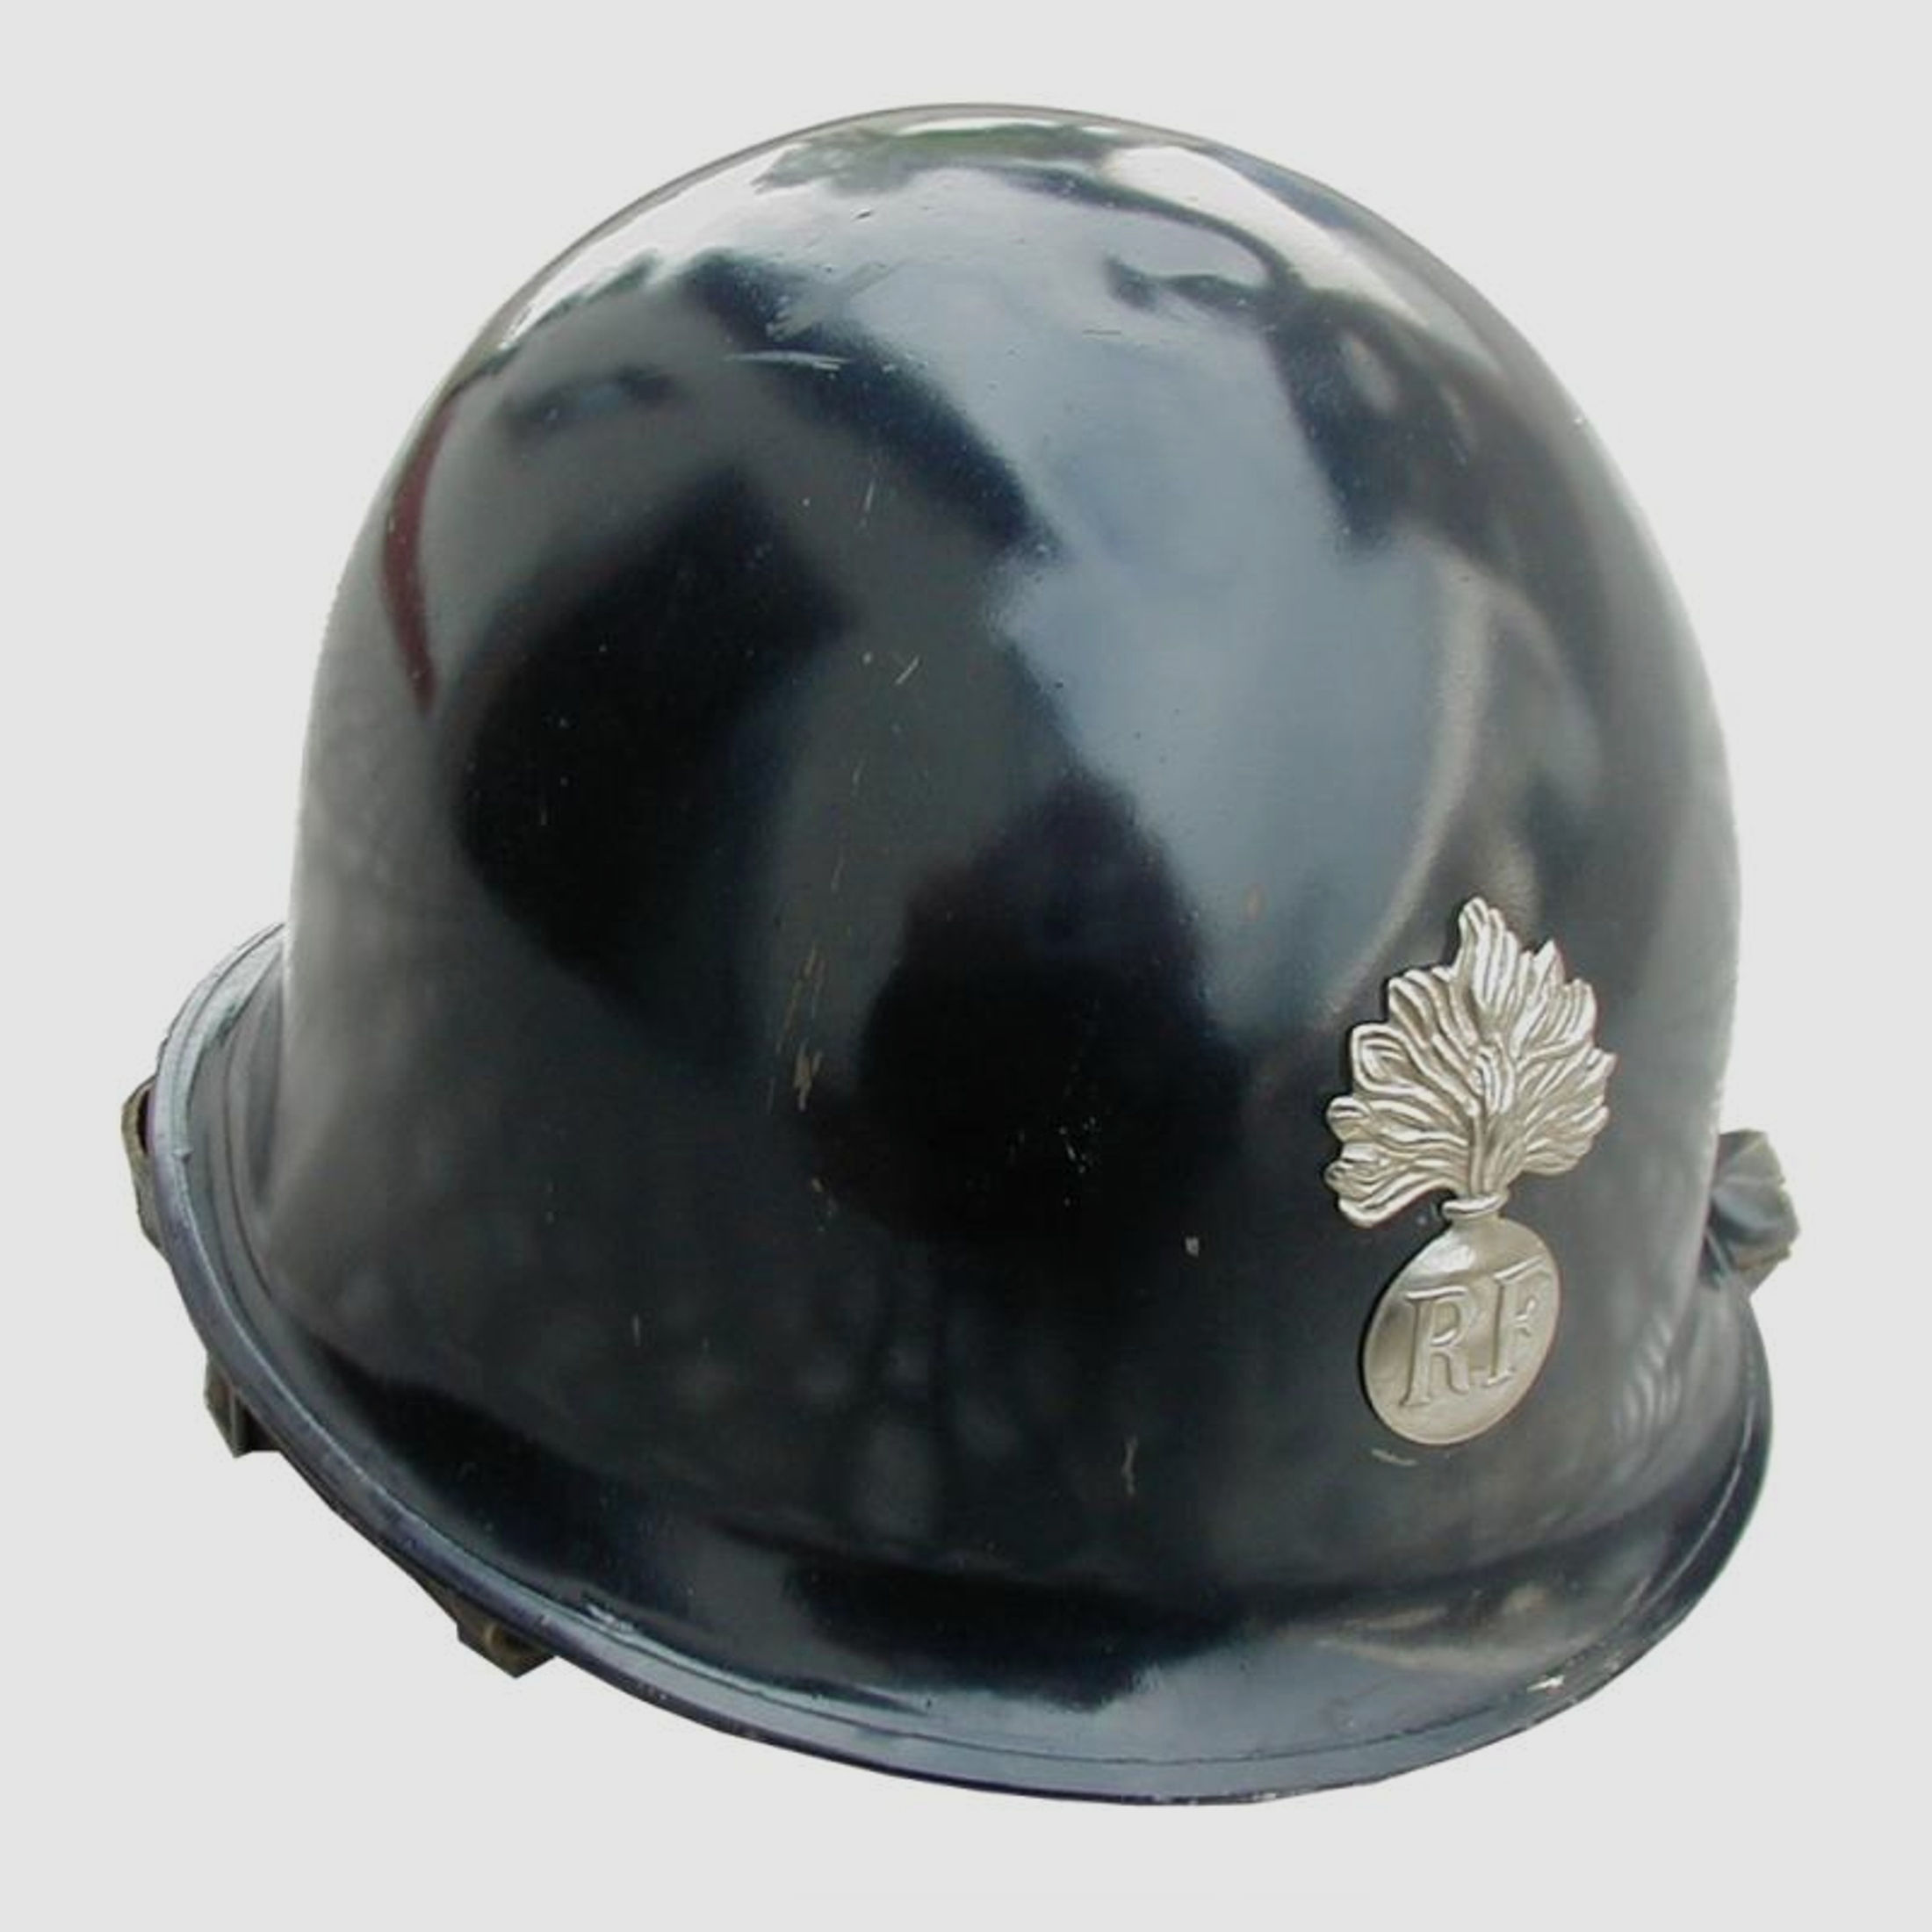 Französischer Gendarmerie-Helm (Mle 1951), gebraucht